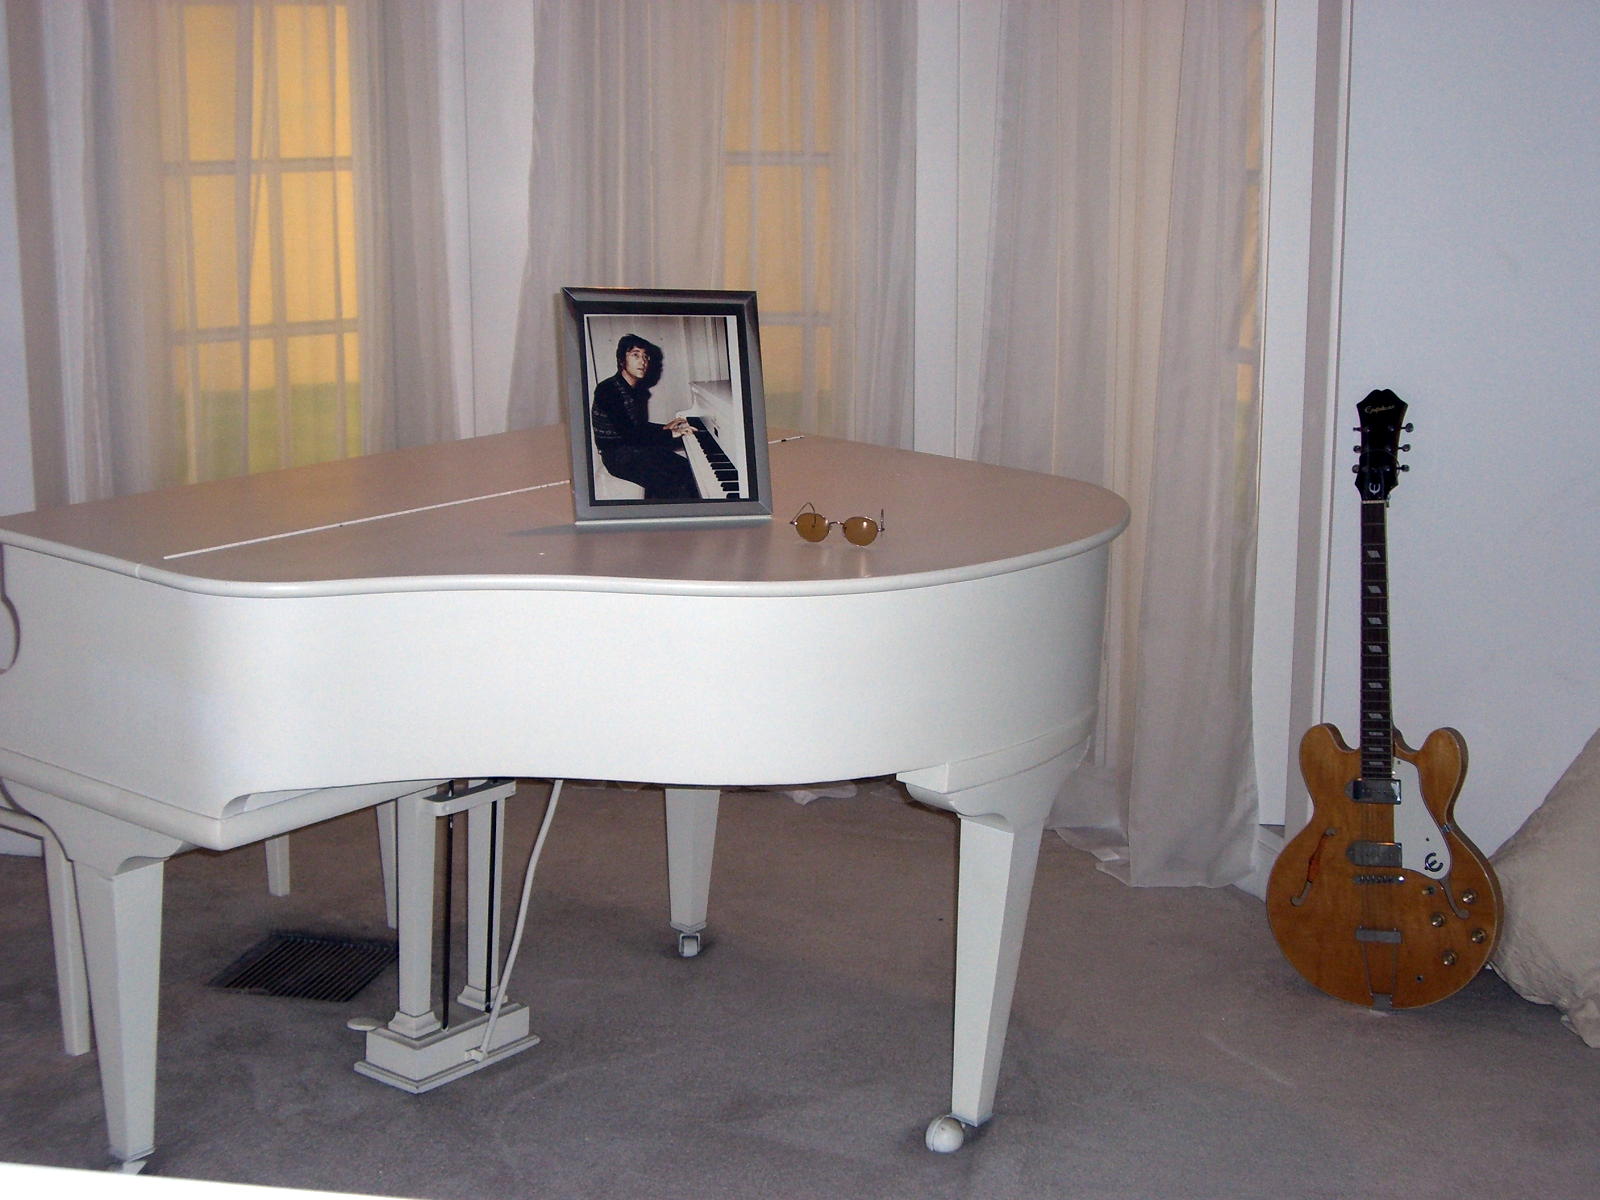 John Lennon's piano